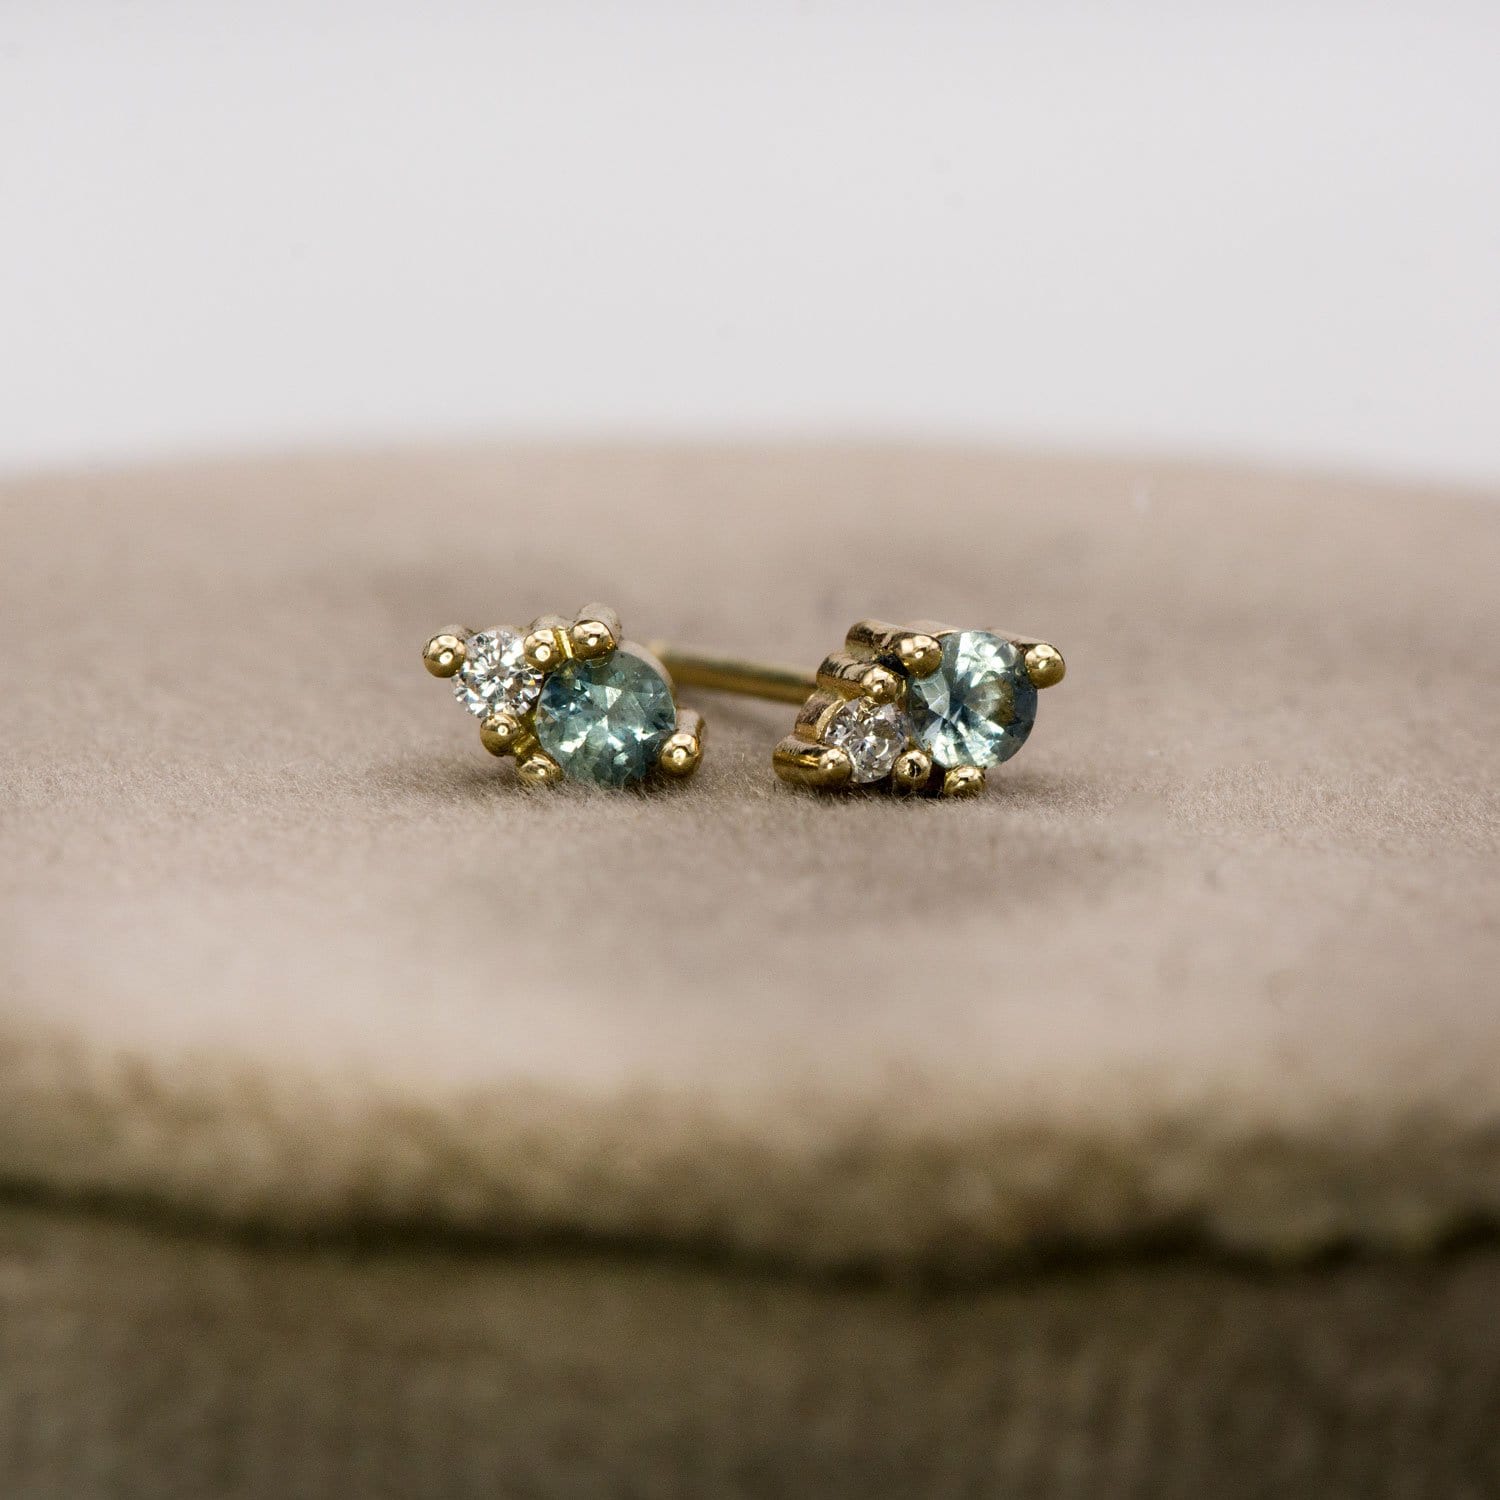 Fair Trade Blue-Green Montana Sapphire & Diamond Stud Earrings Earrings by Nodeform